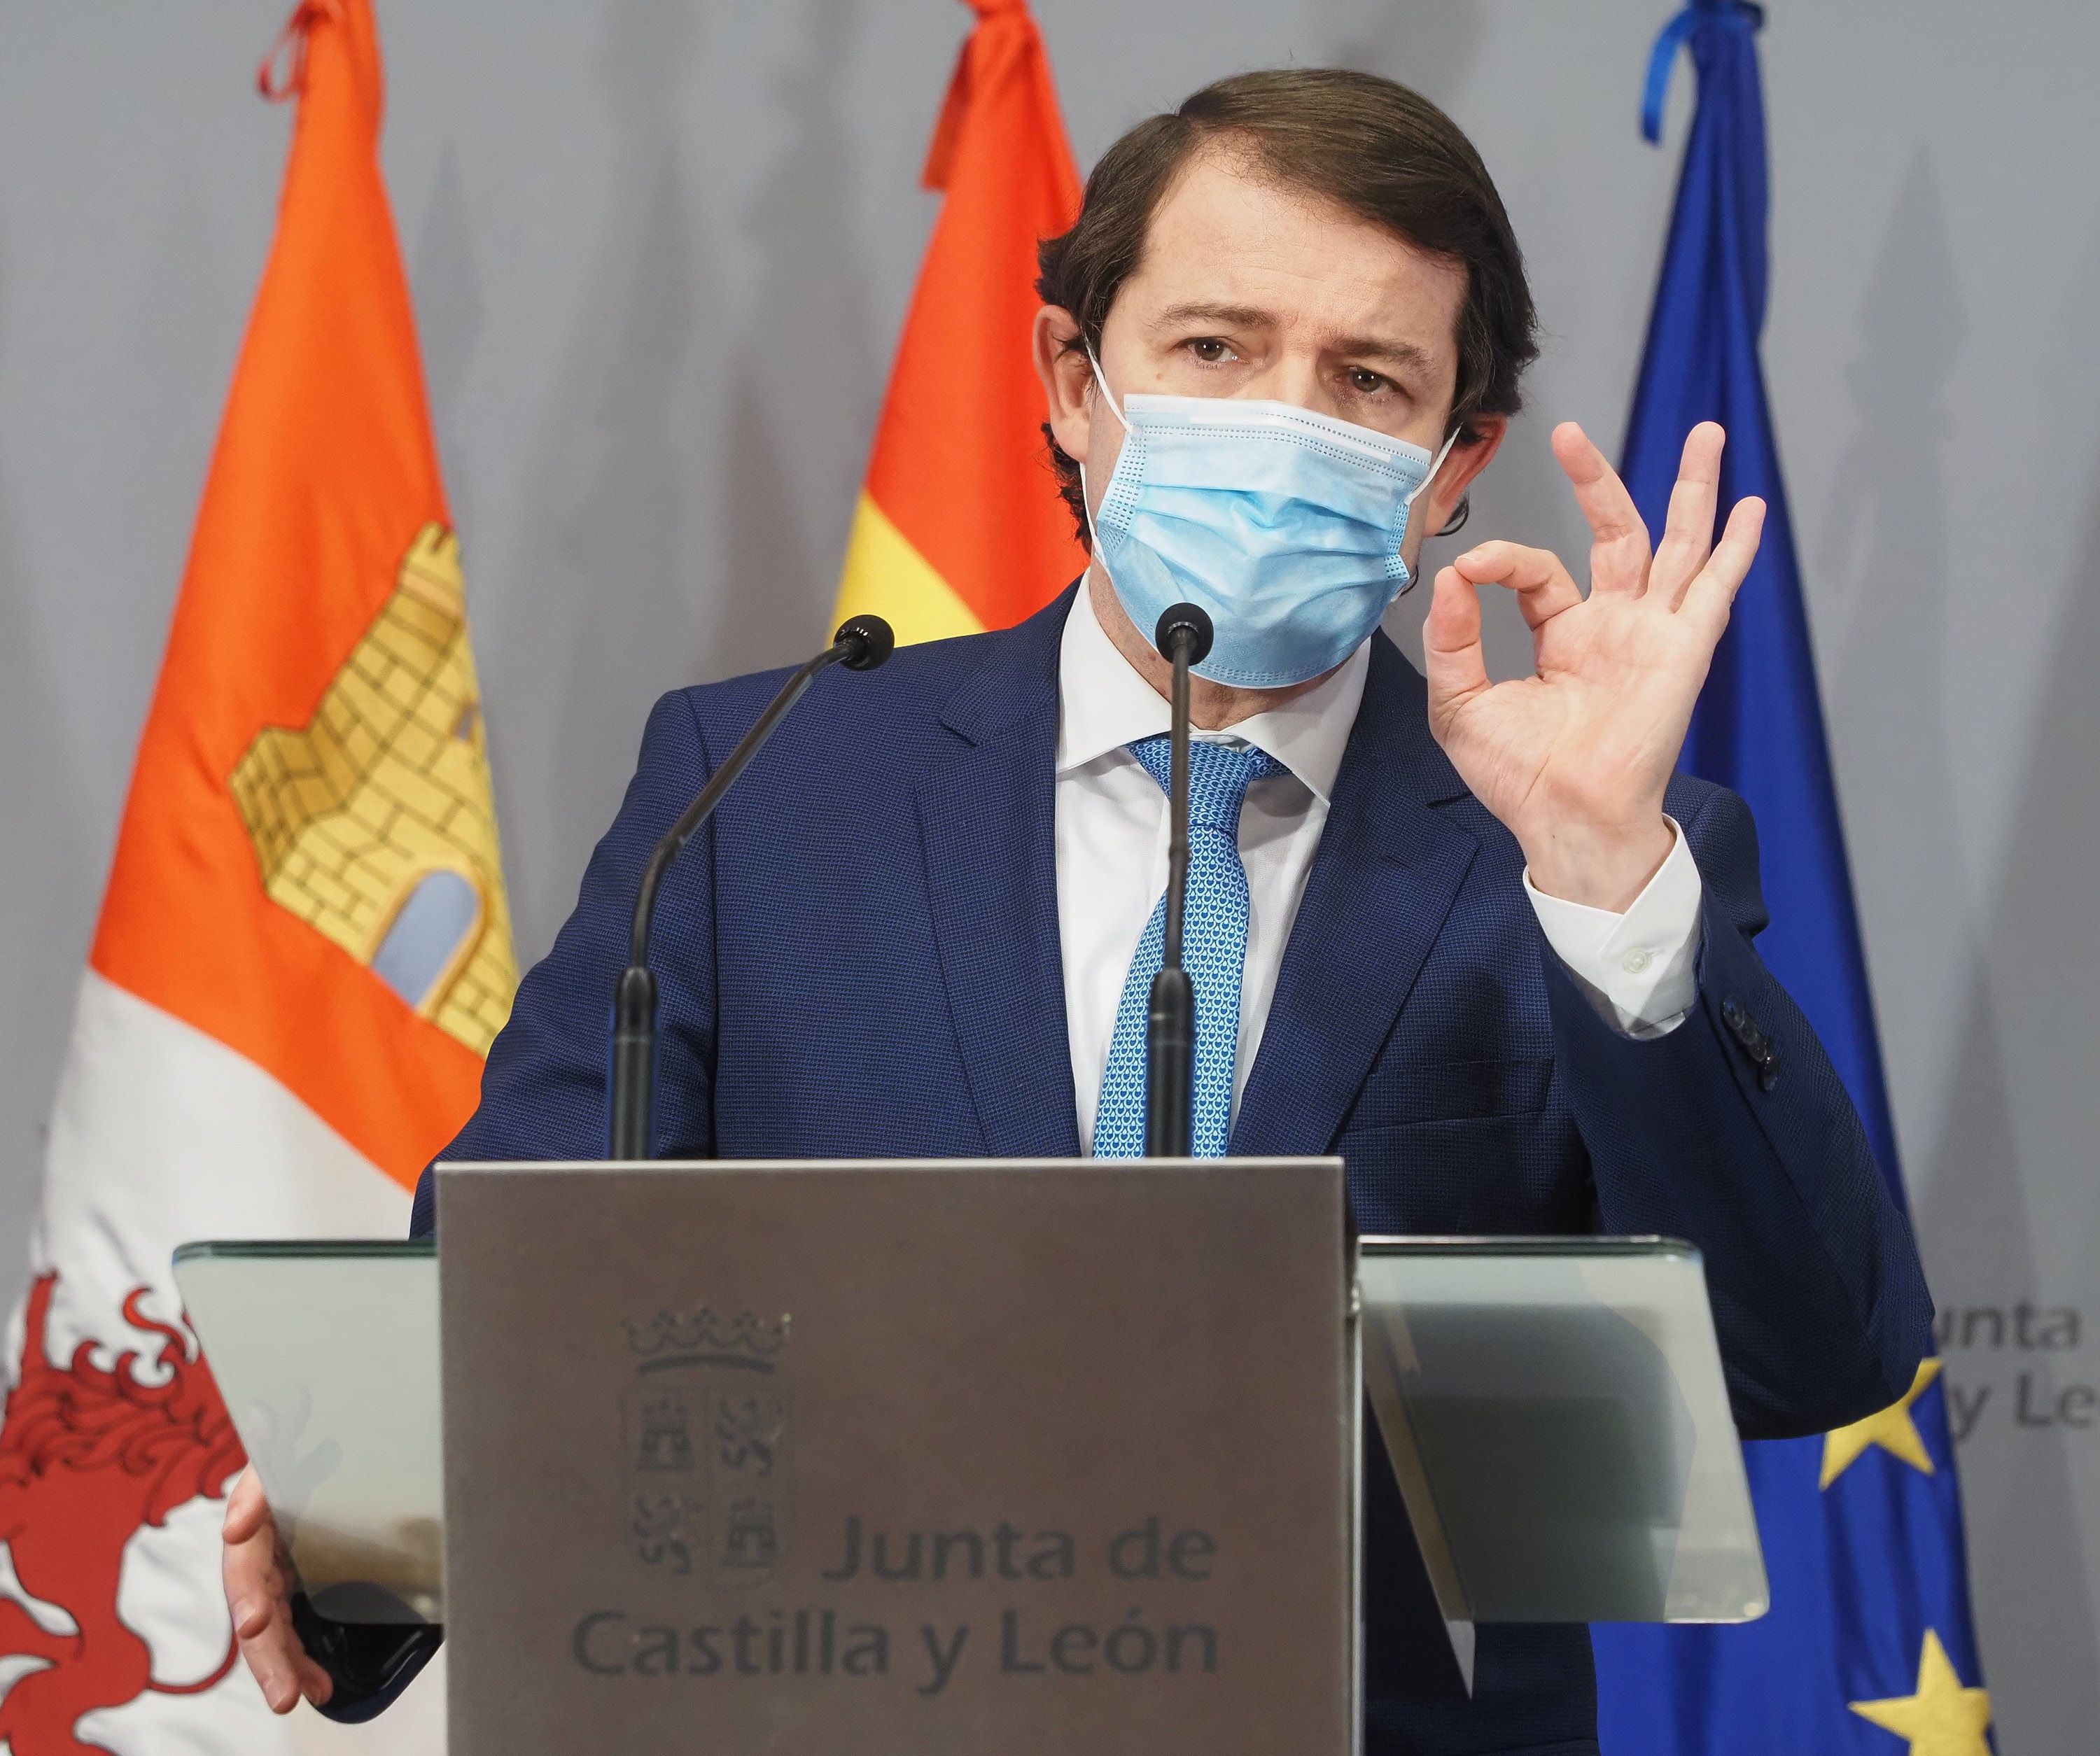 El PSOE de Castilla y León presenta también una moción de censura contra PP y Ciudadanos